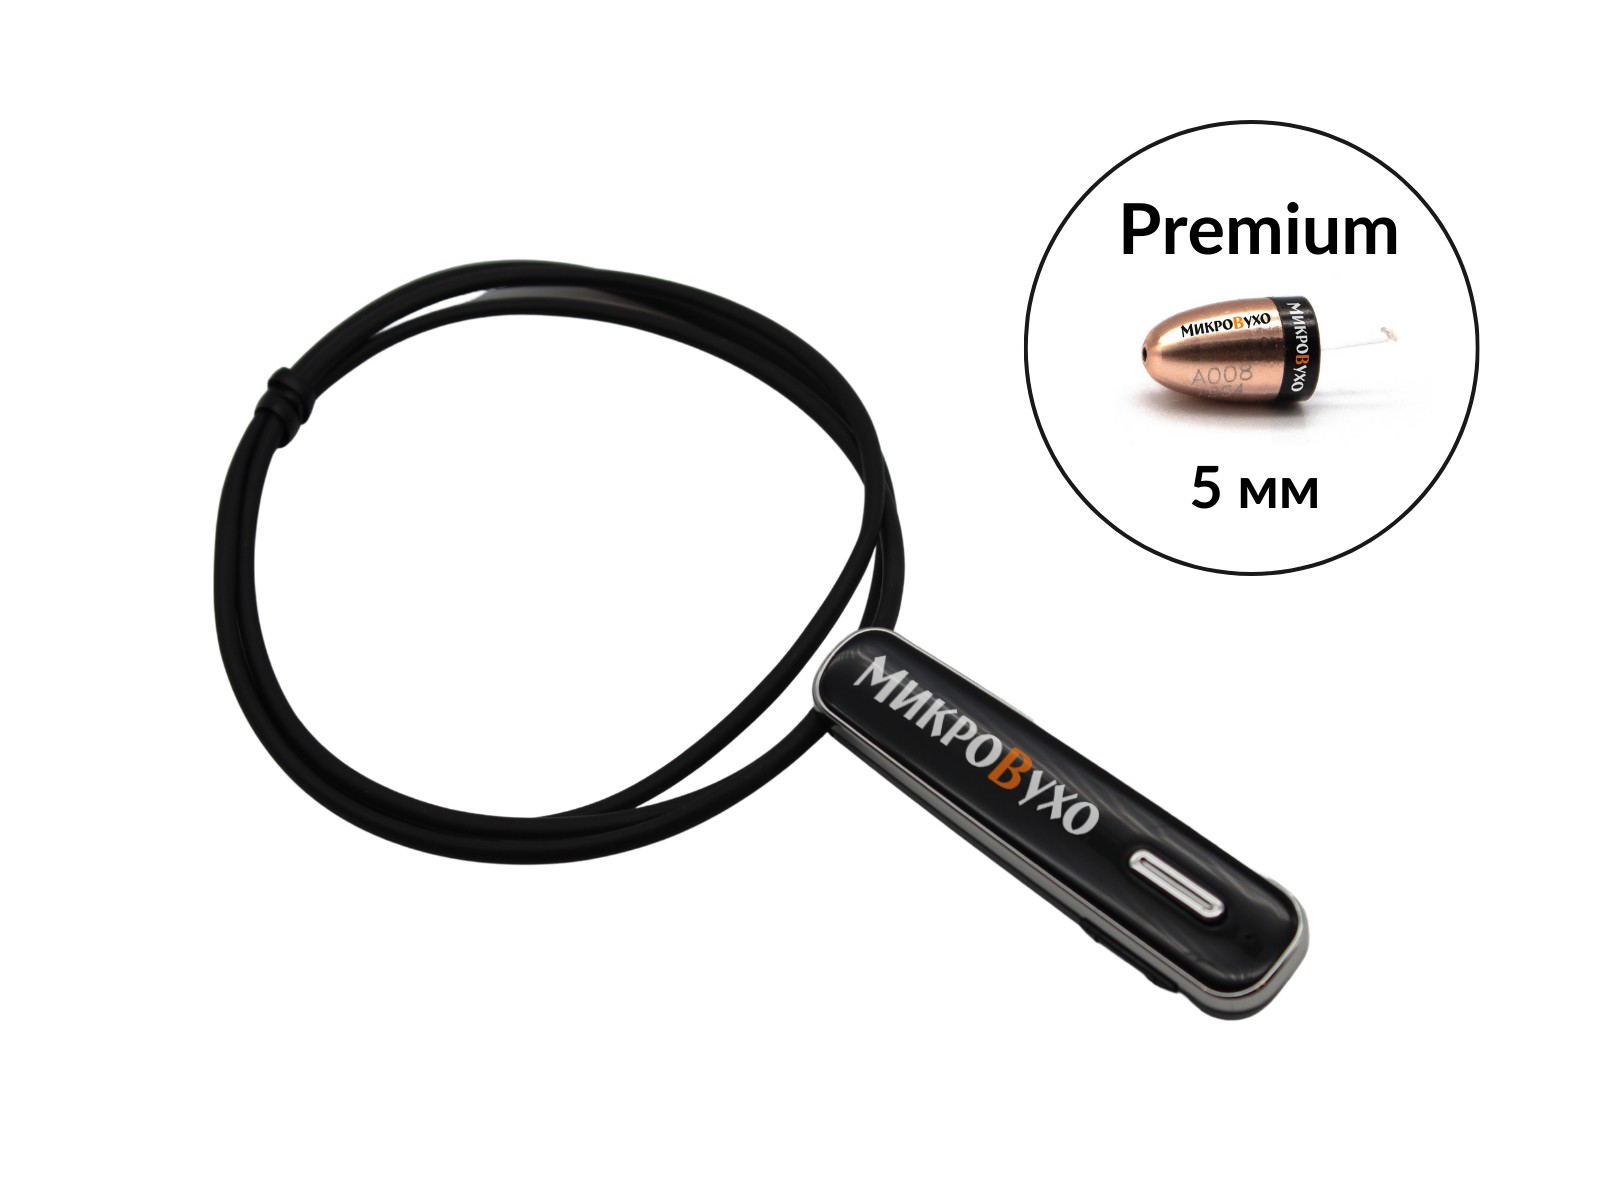 Гарнитура Bluetooth Premier Lite с капсульным микронаушником Premium - изображение